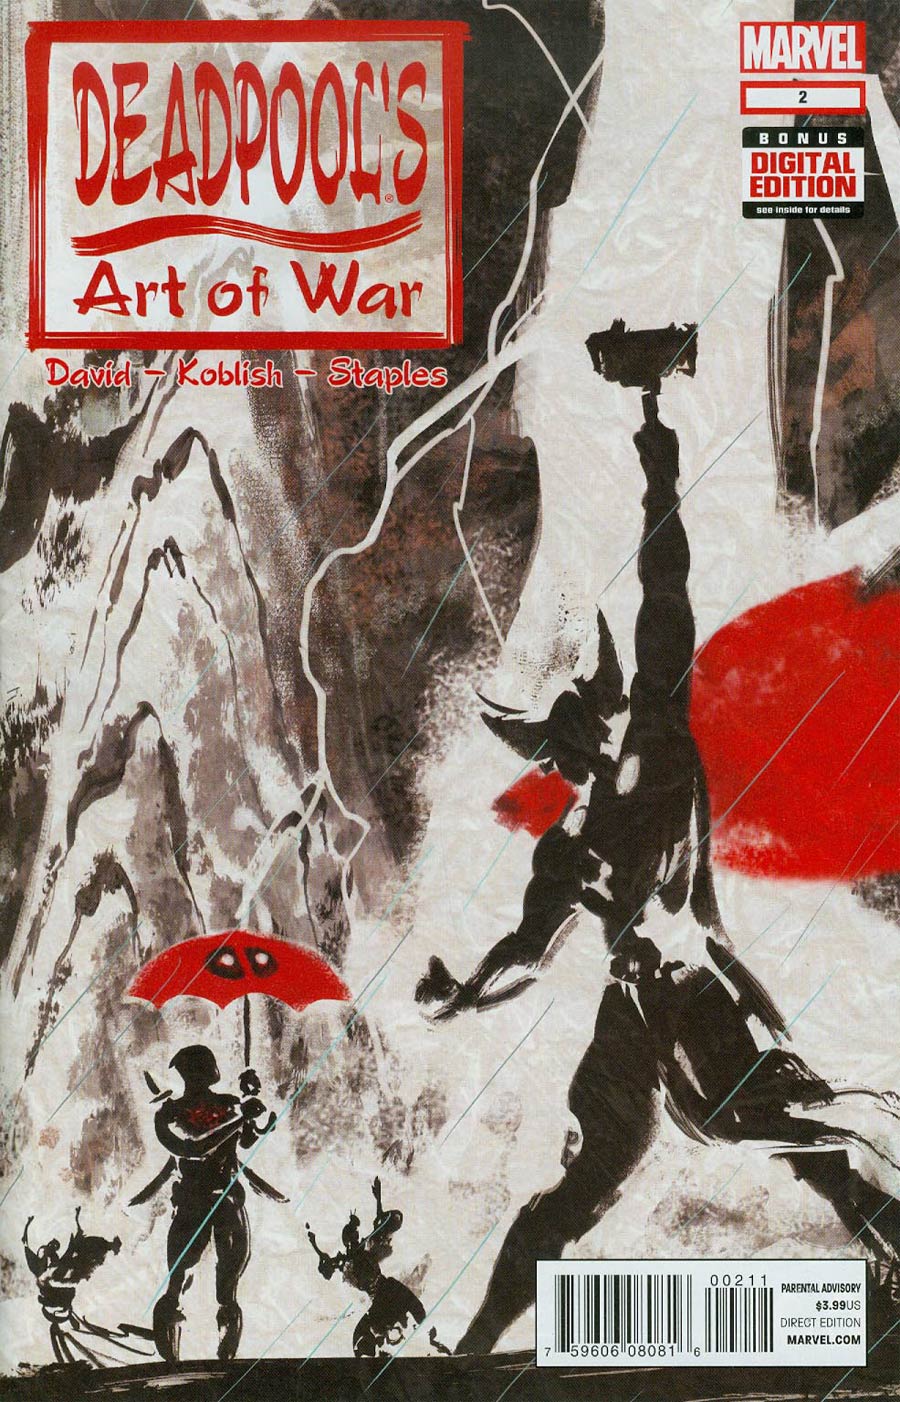 Deadpools Art Of War #2